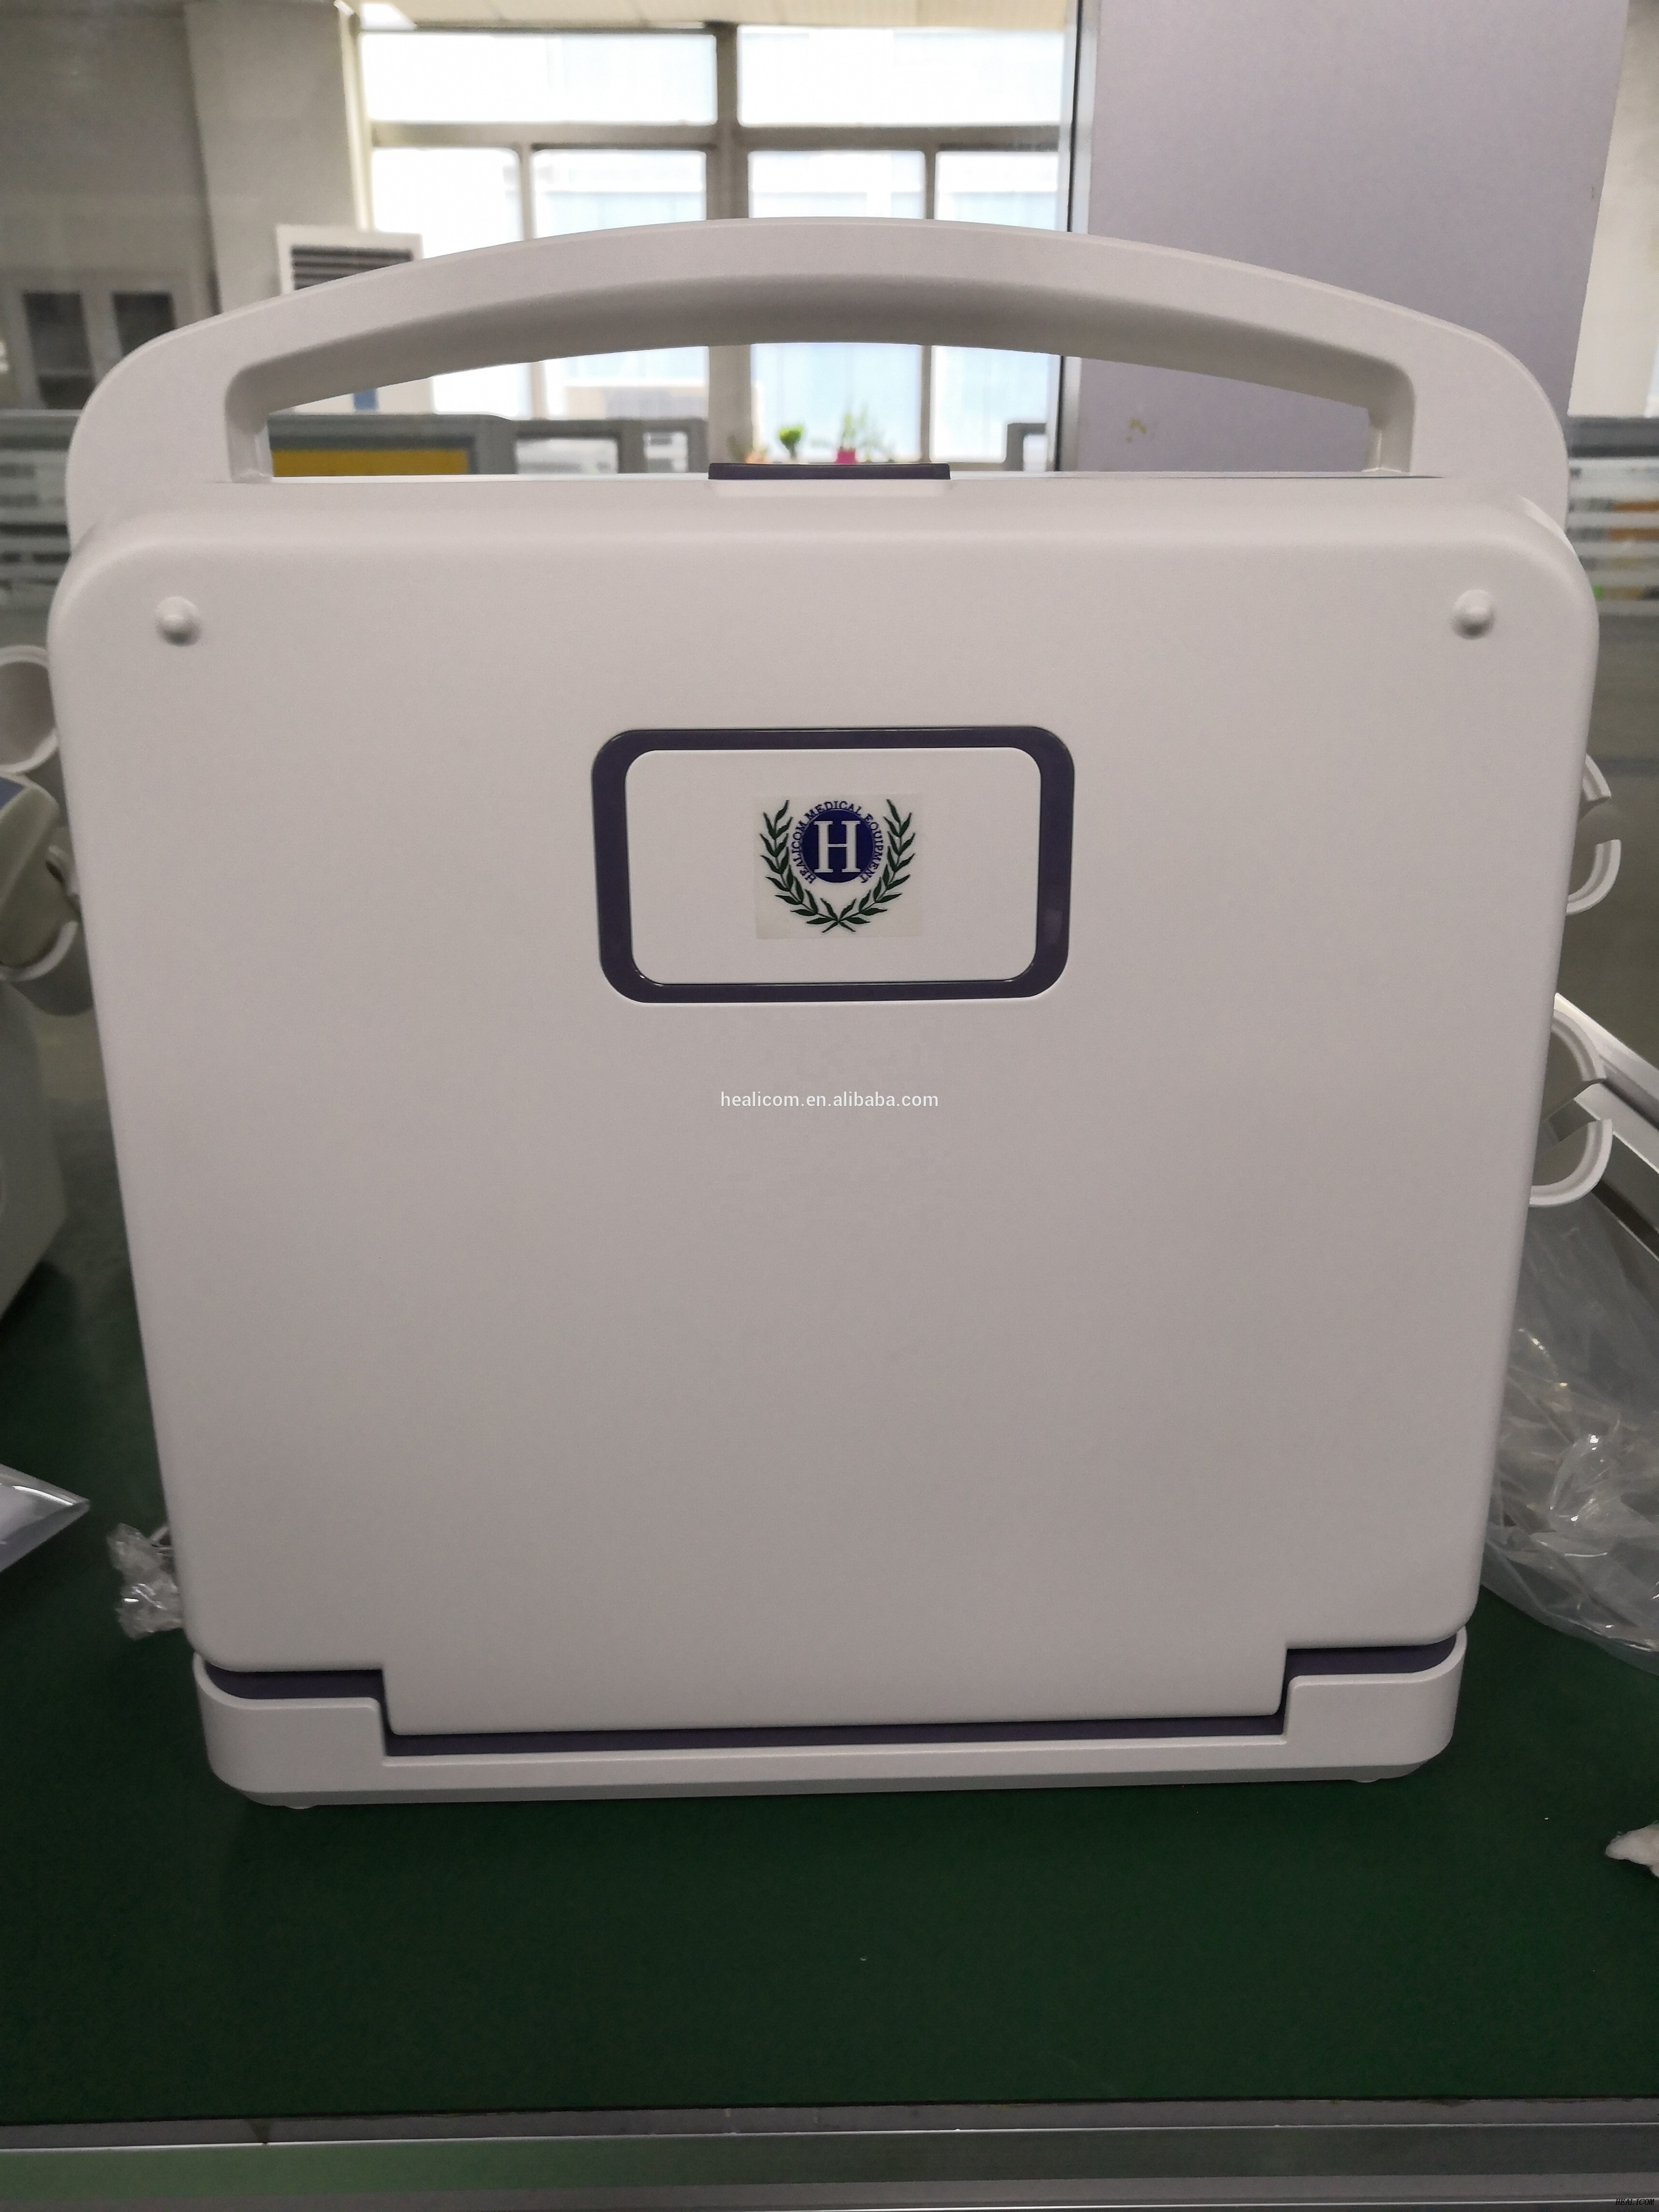 Scanner de diagnostic à ultrasons Doppler couleur à main HUC-300